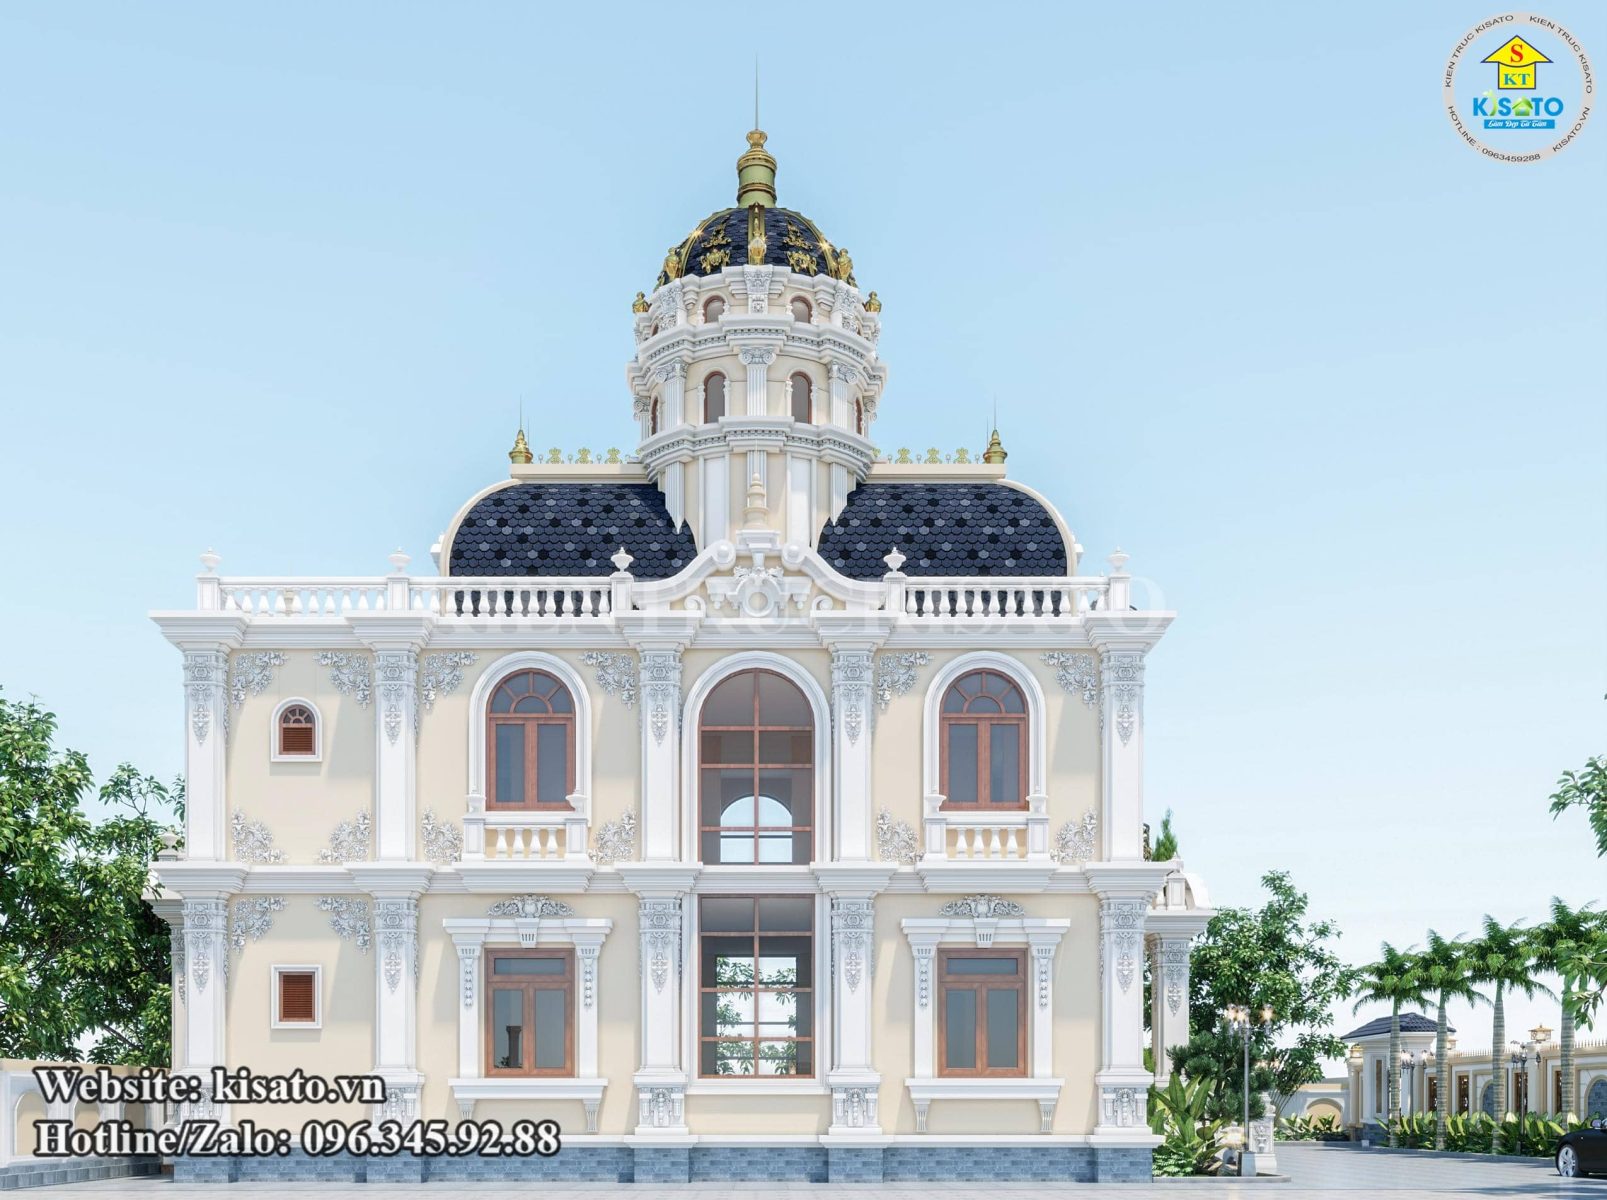 Phối cảnh của mẫu thiết kế biệt thự lâu đài tân cổ điển Pháp 2 tầng đẹp tại Vũng Tàu